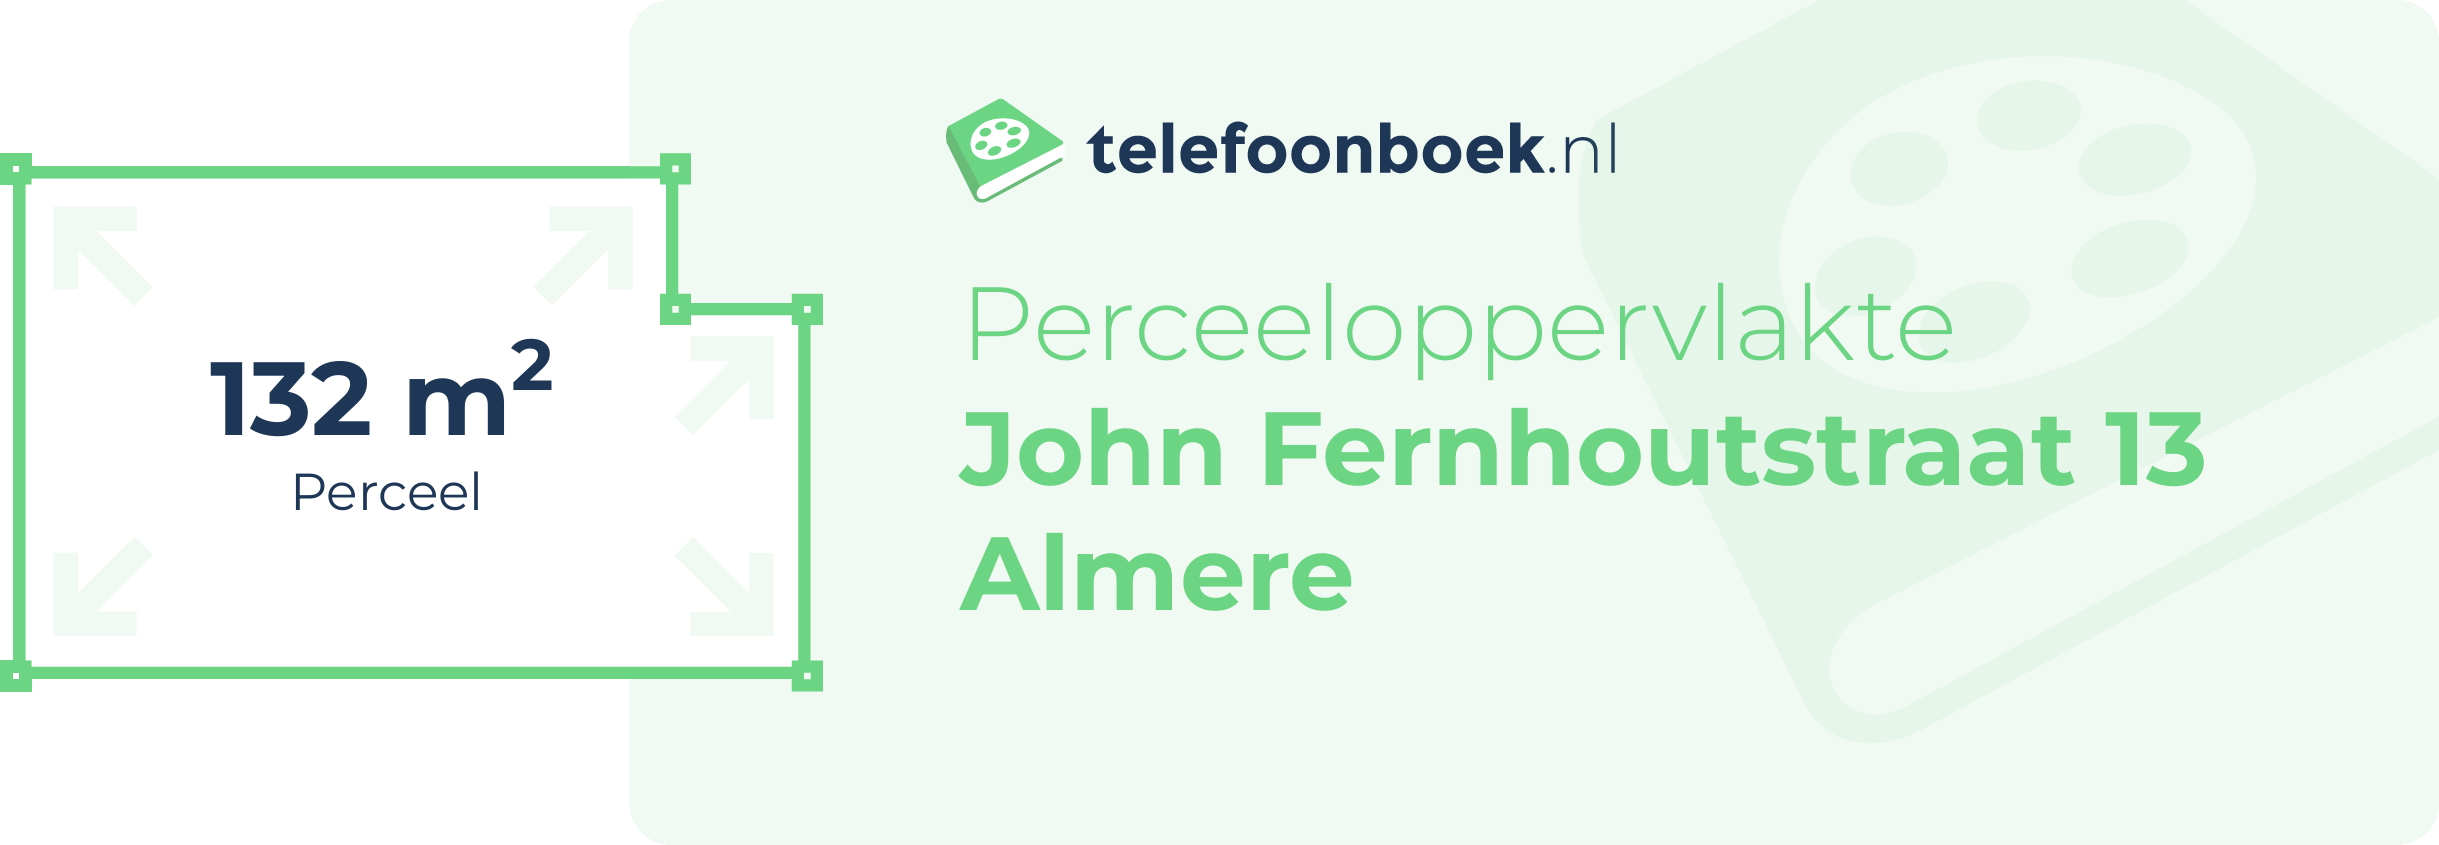 Perceeloppervlakte John Fernhoutstraat 13 Almere